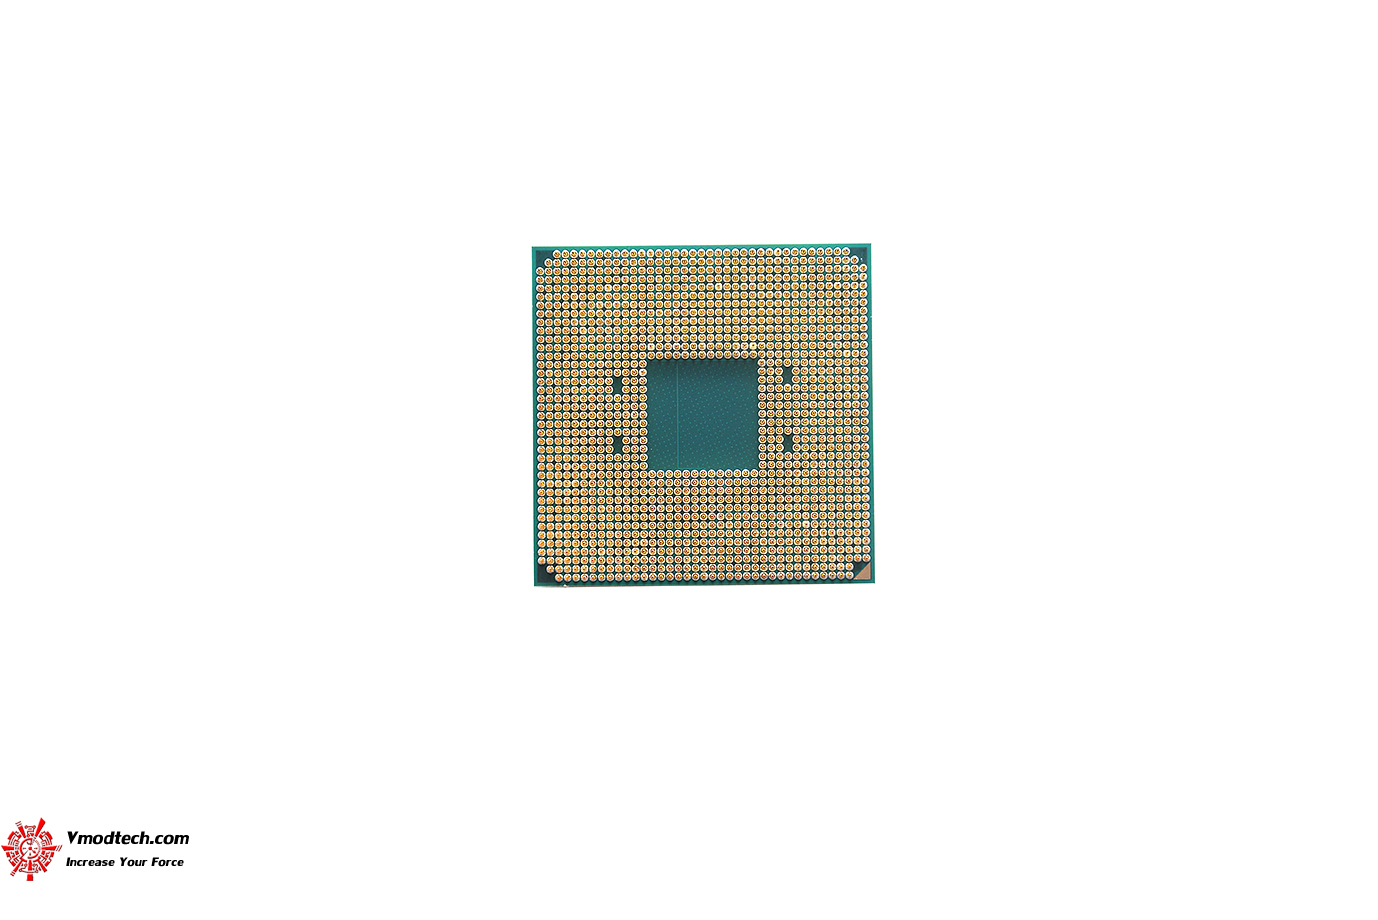 dsc 7769 AMD RYZEN 3 3300X PROCESSOR REVIEW